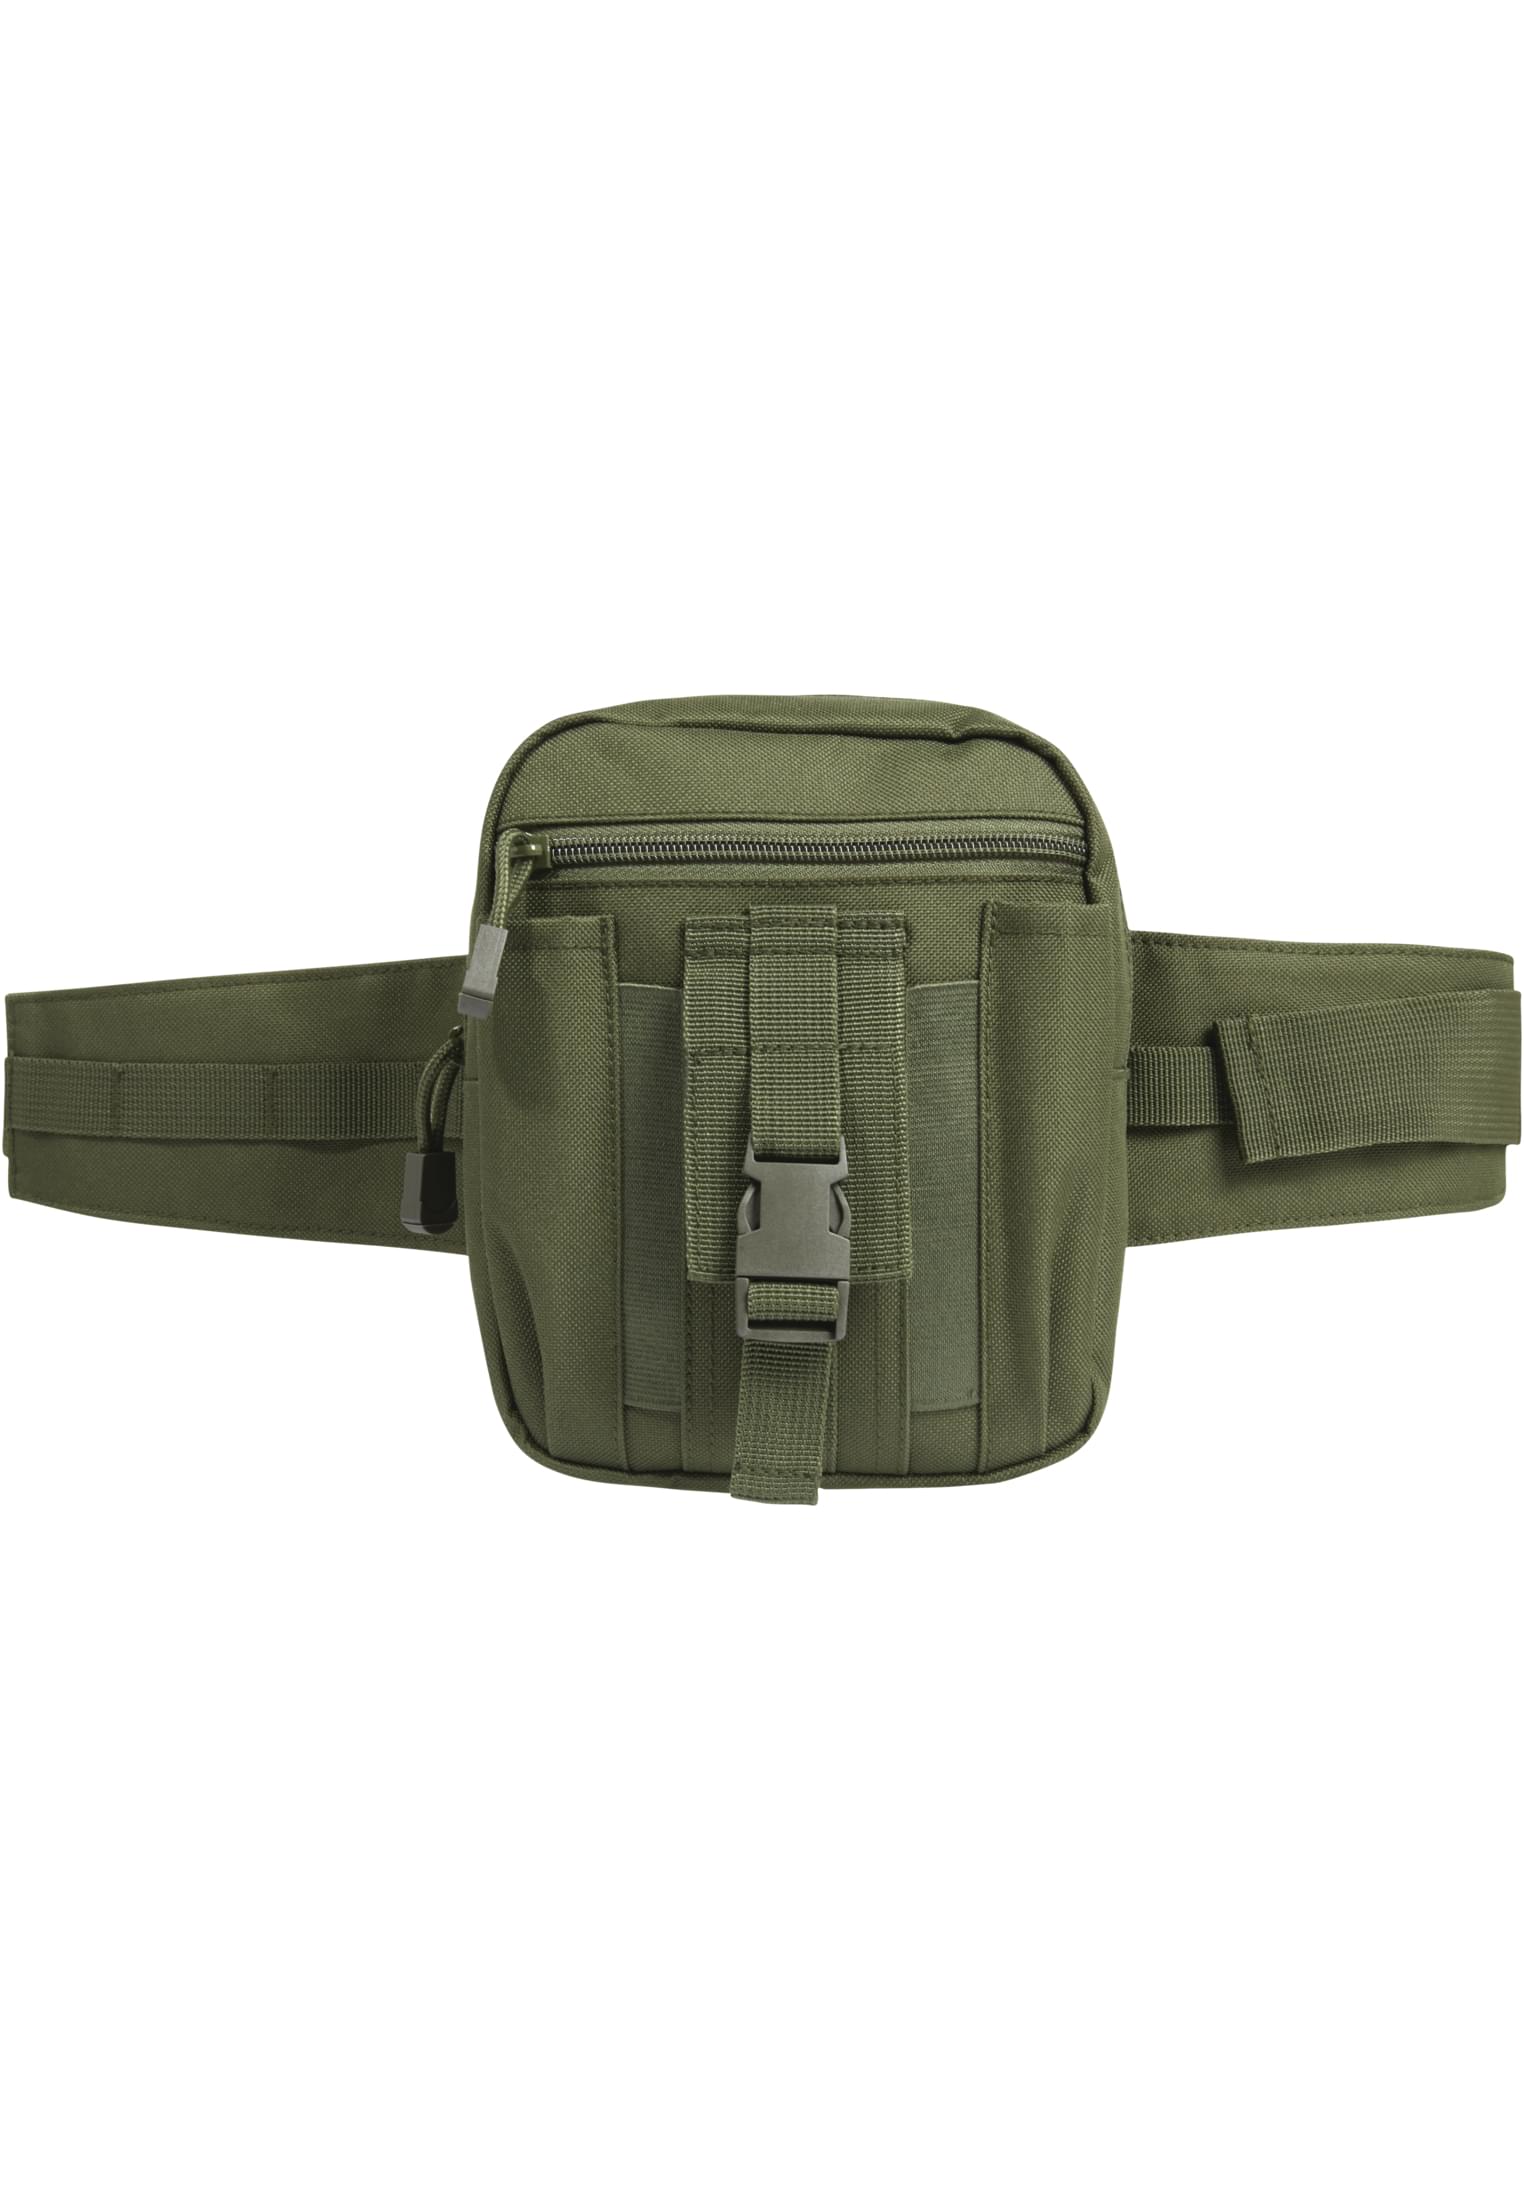 Taschen waistbeltbag Allround in Farbe olive